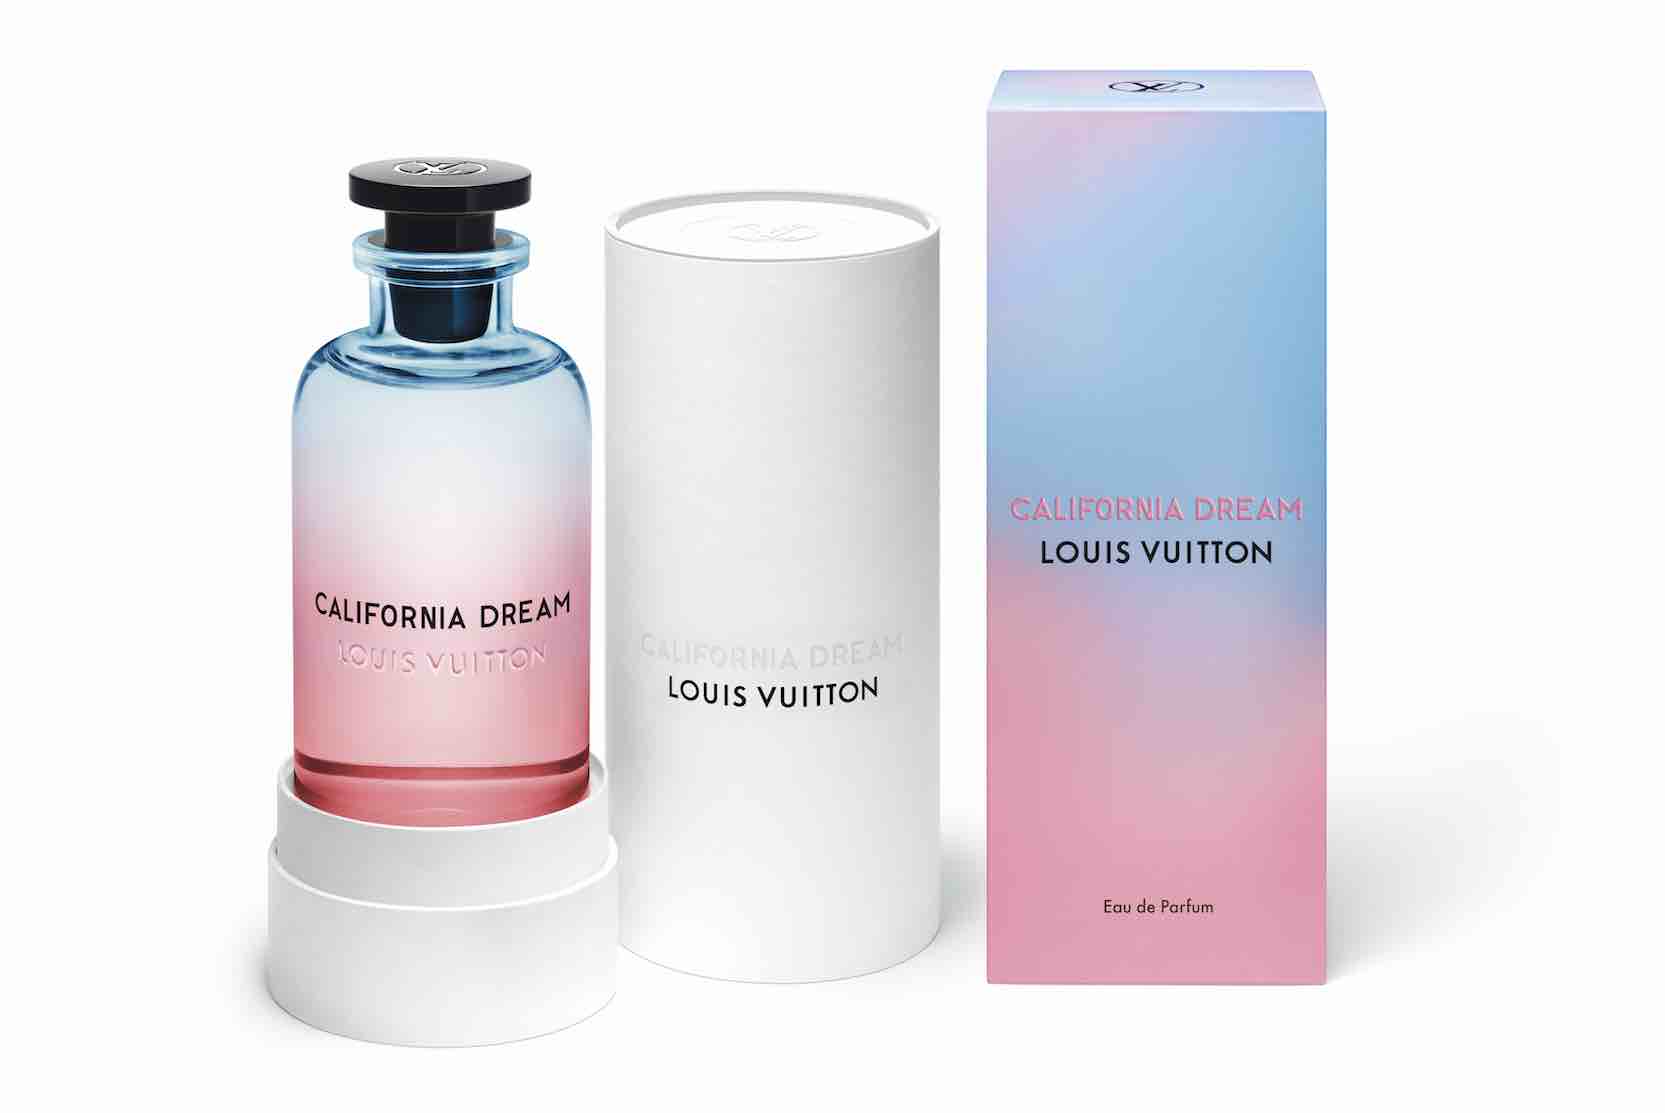 California Dream, le nouveau parfum de cologne de Louis Vuitton | 0